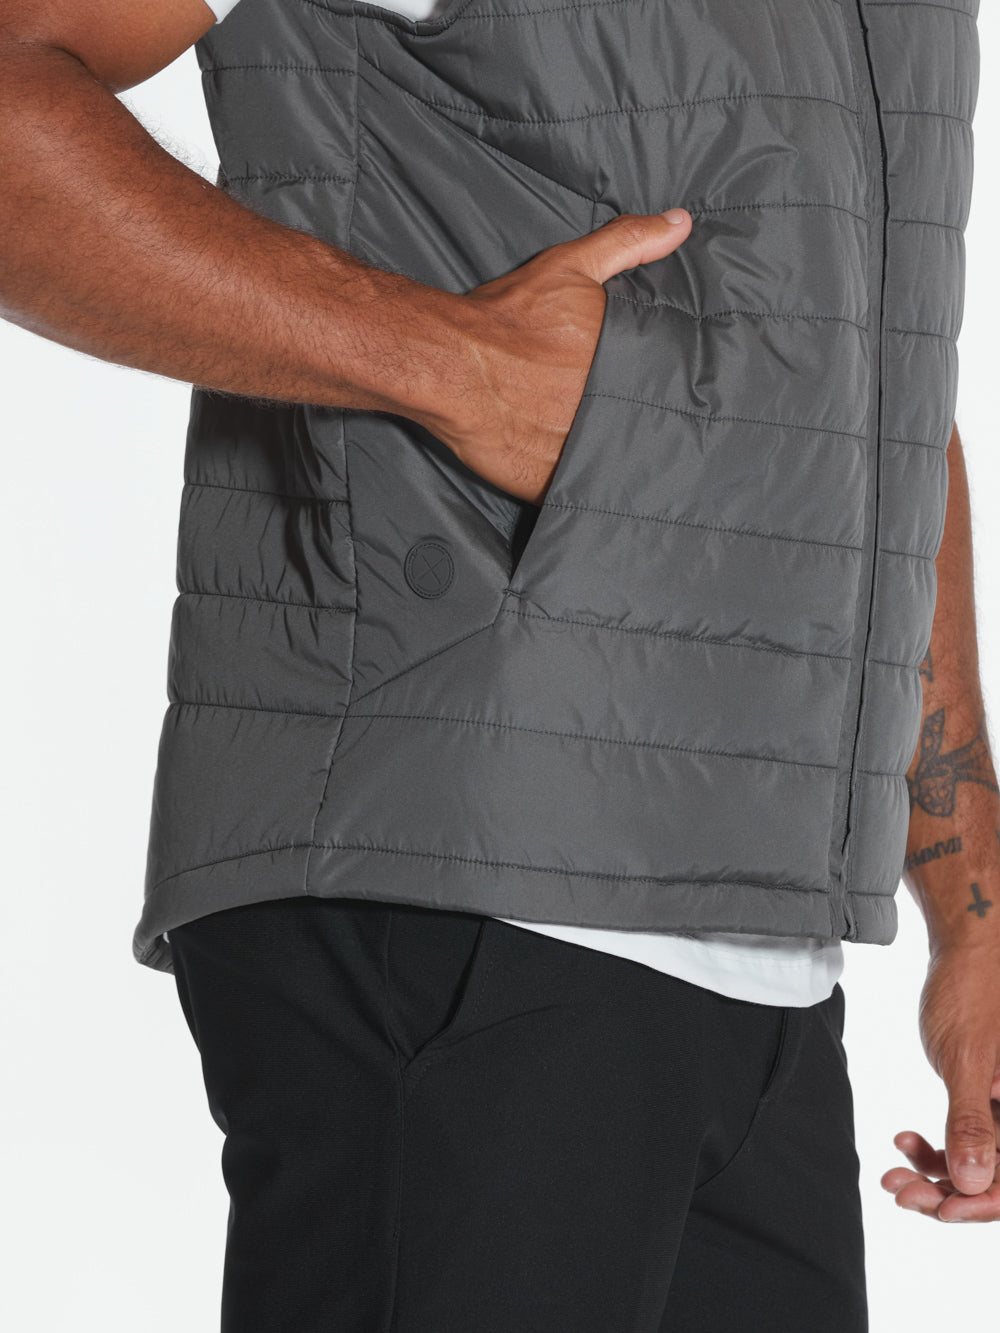 PrimaLoft® Power Vest | Charcoal Signature-fit